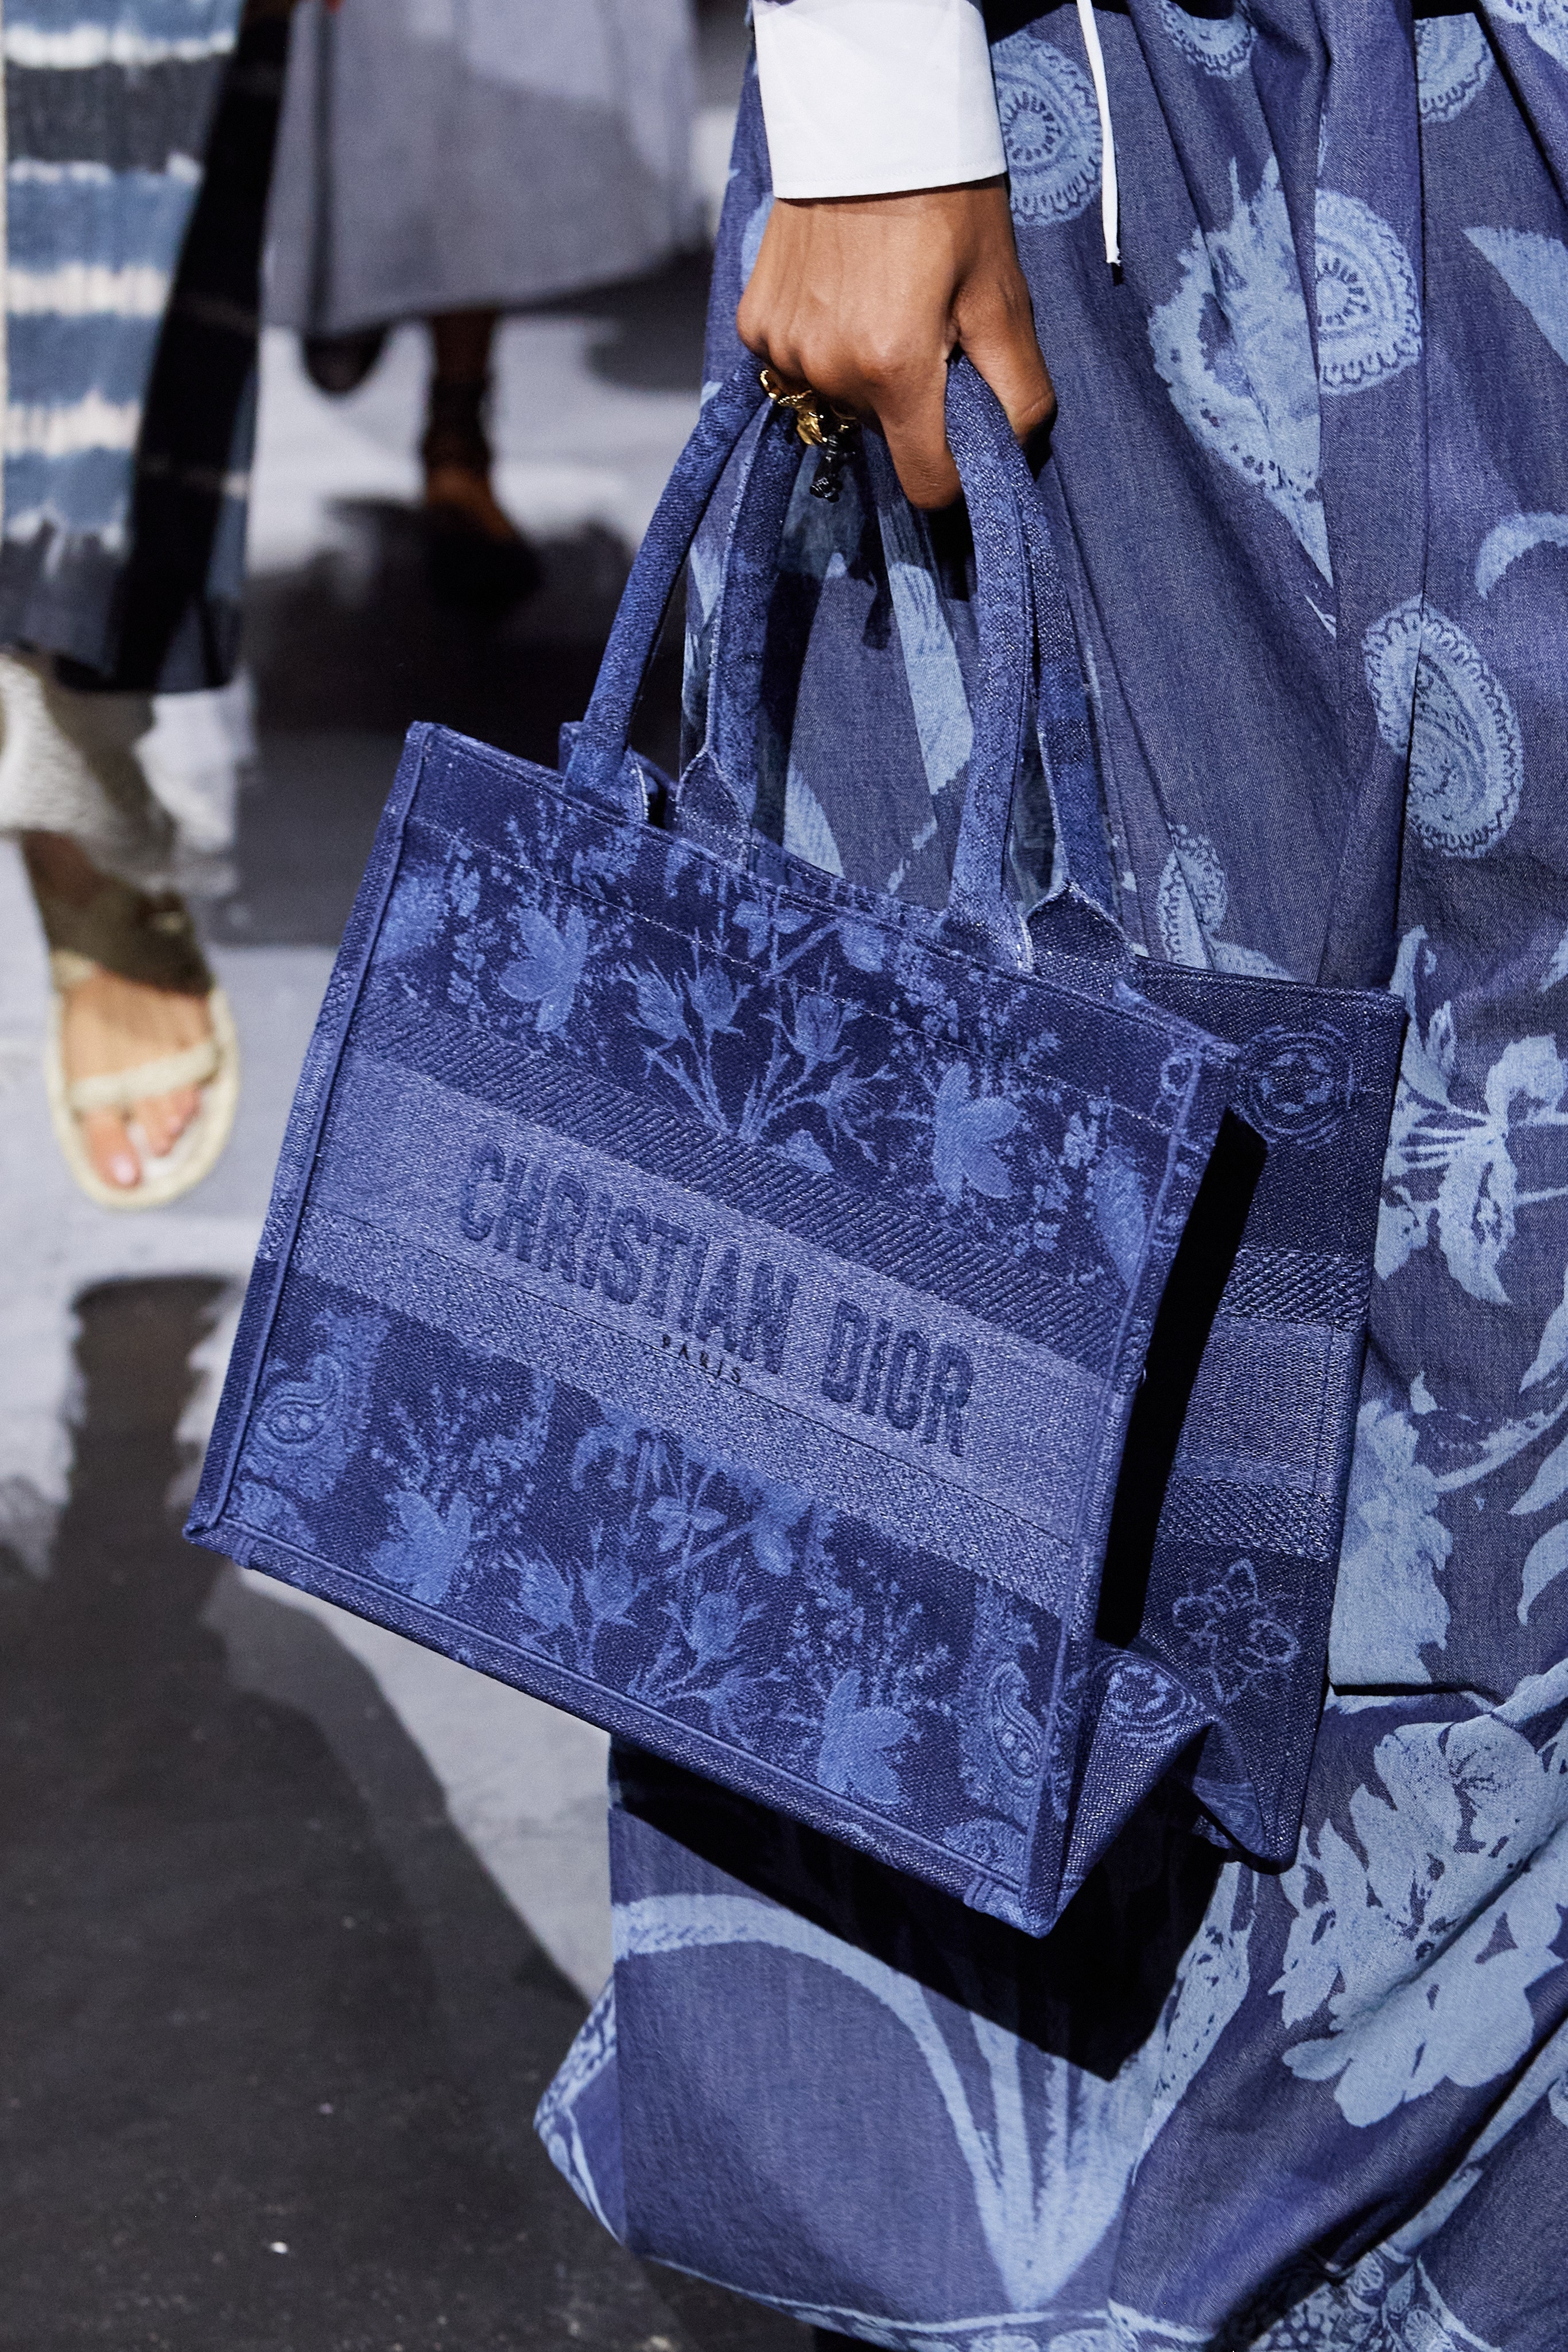 Dior 30 montaigne clutches spring 2021 handbags collection